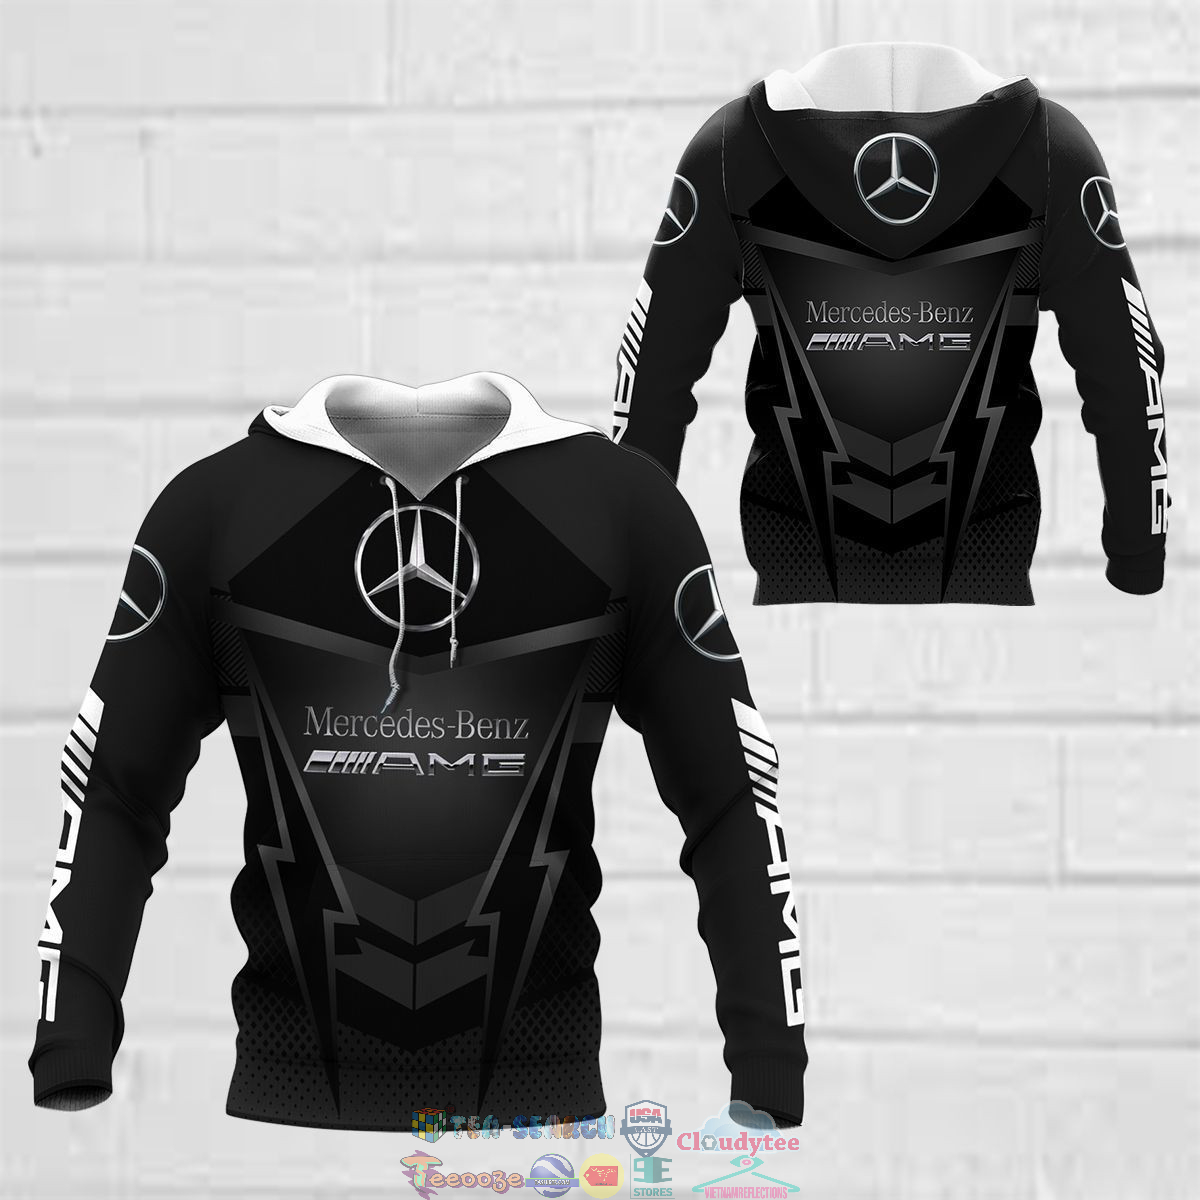 q3houcwr-TH150822-19xxxMercedes-AMG-ver-2-3D-hoodie-and-t-shirt3.jpg